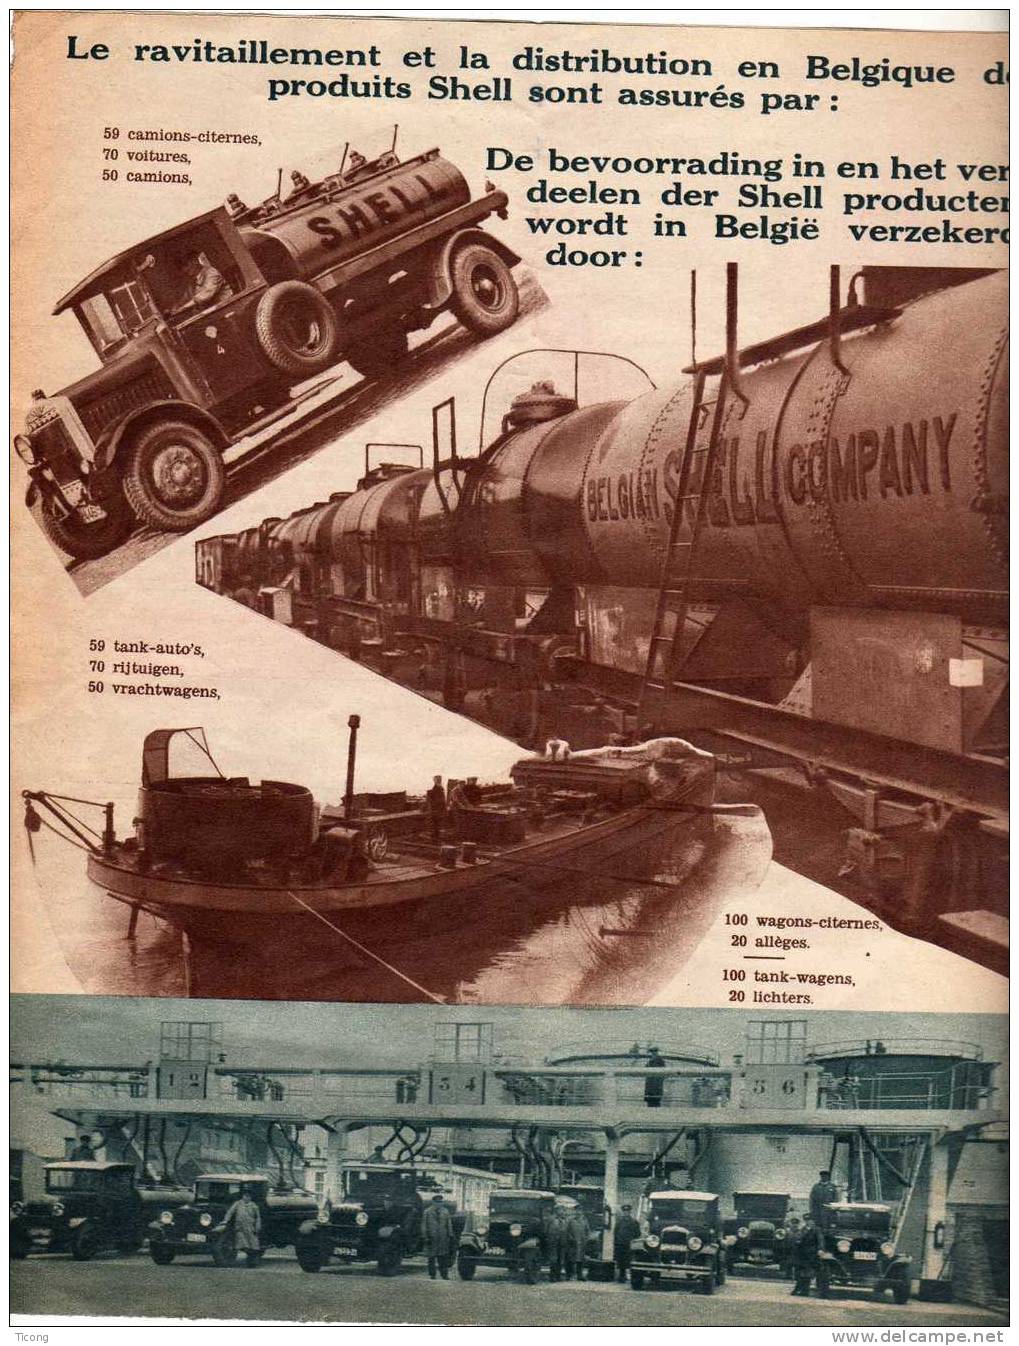 PUBLICITE SHELL EN BELGIQUE 1935 - 16 PAGES AVEC PHOTOS LEGENDE FRANCAIS NEERLANDAIS - SUPERBE ET RARE - Auto